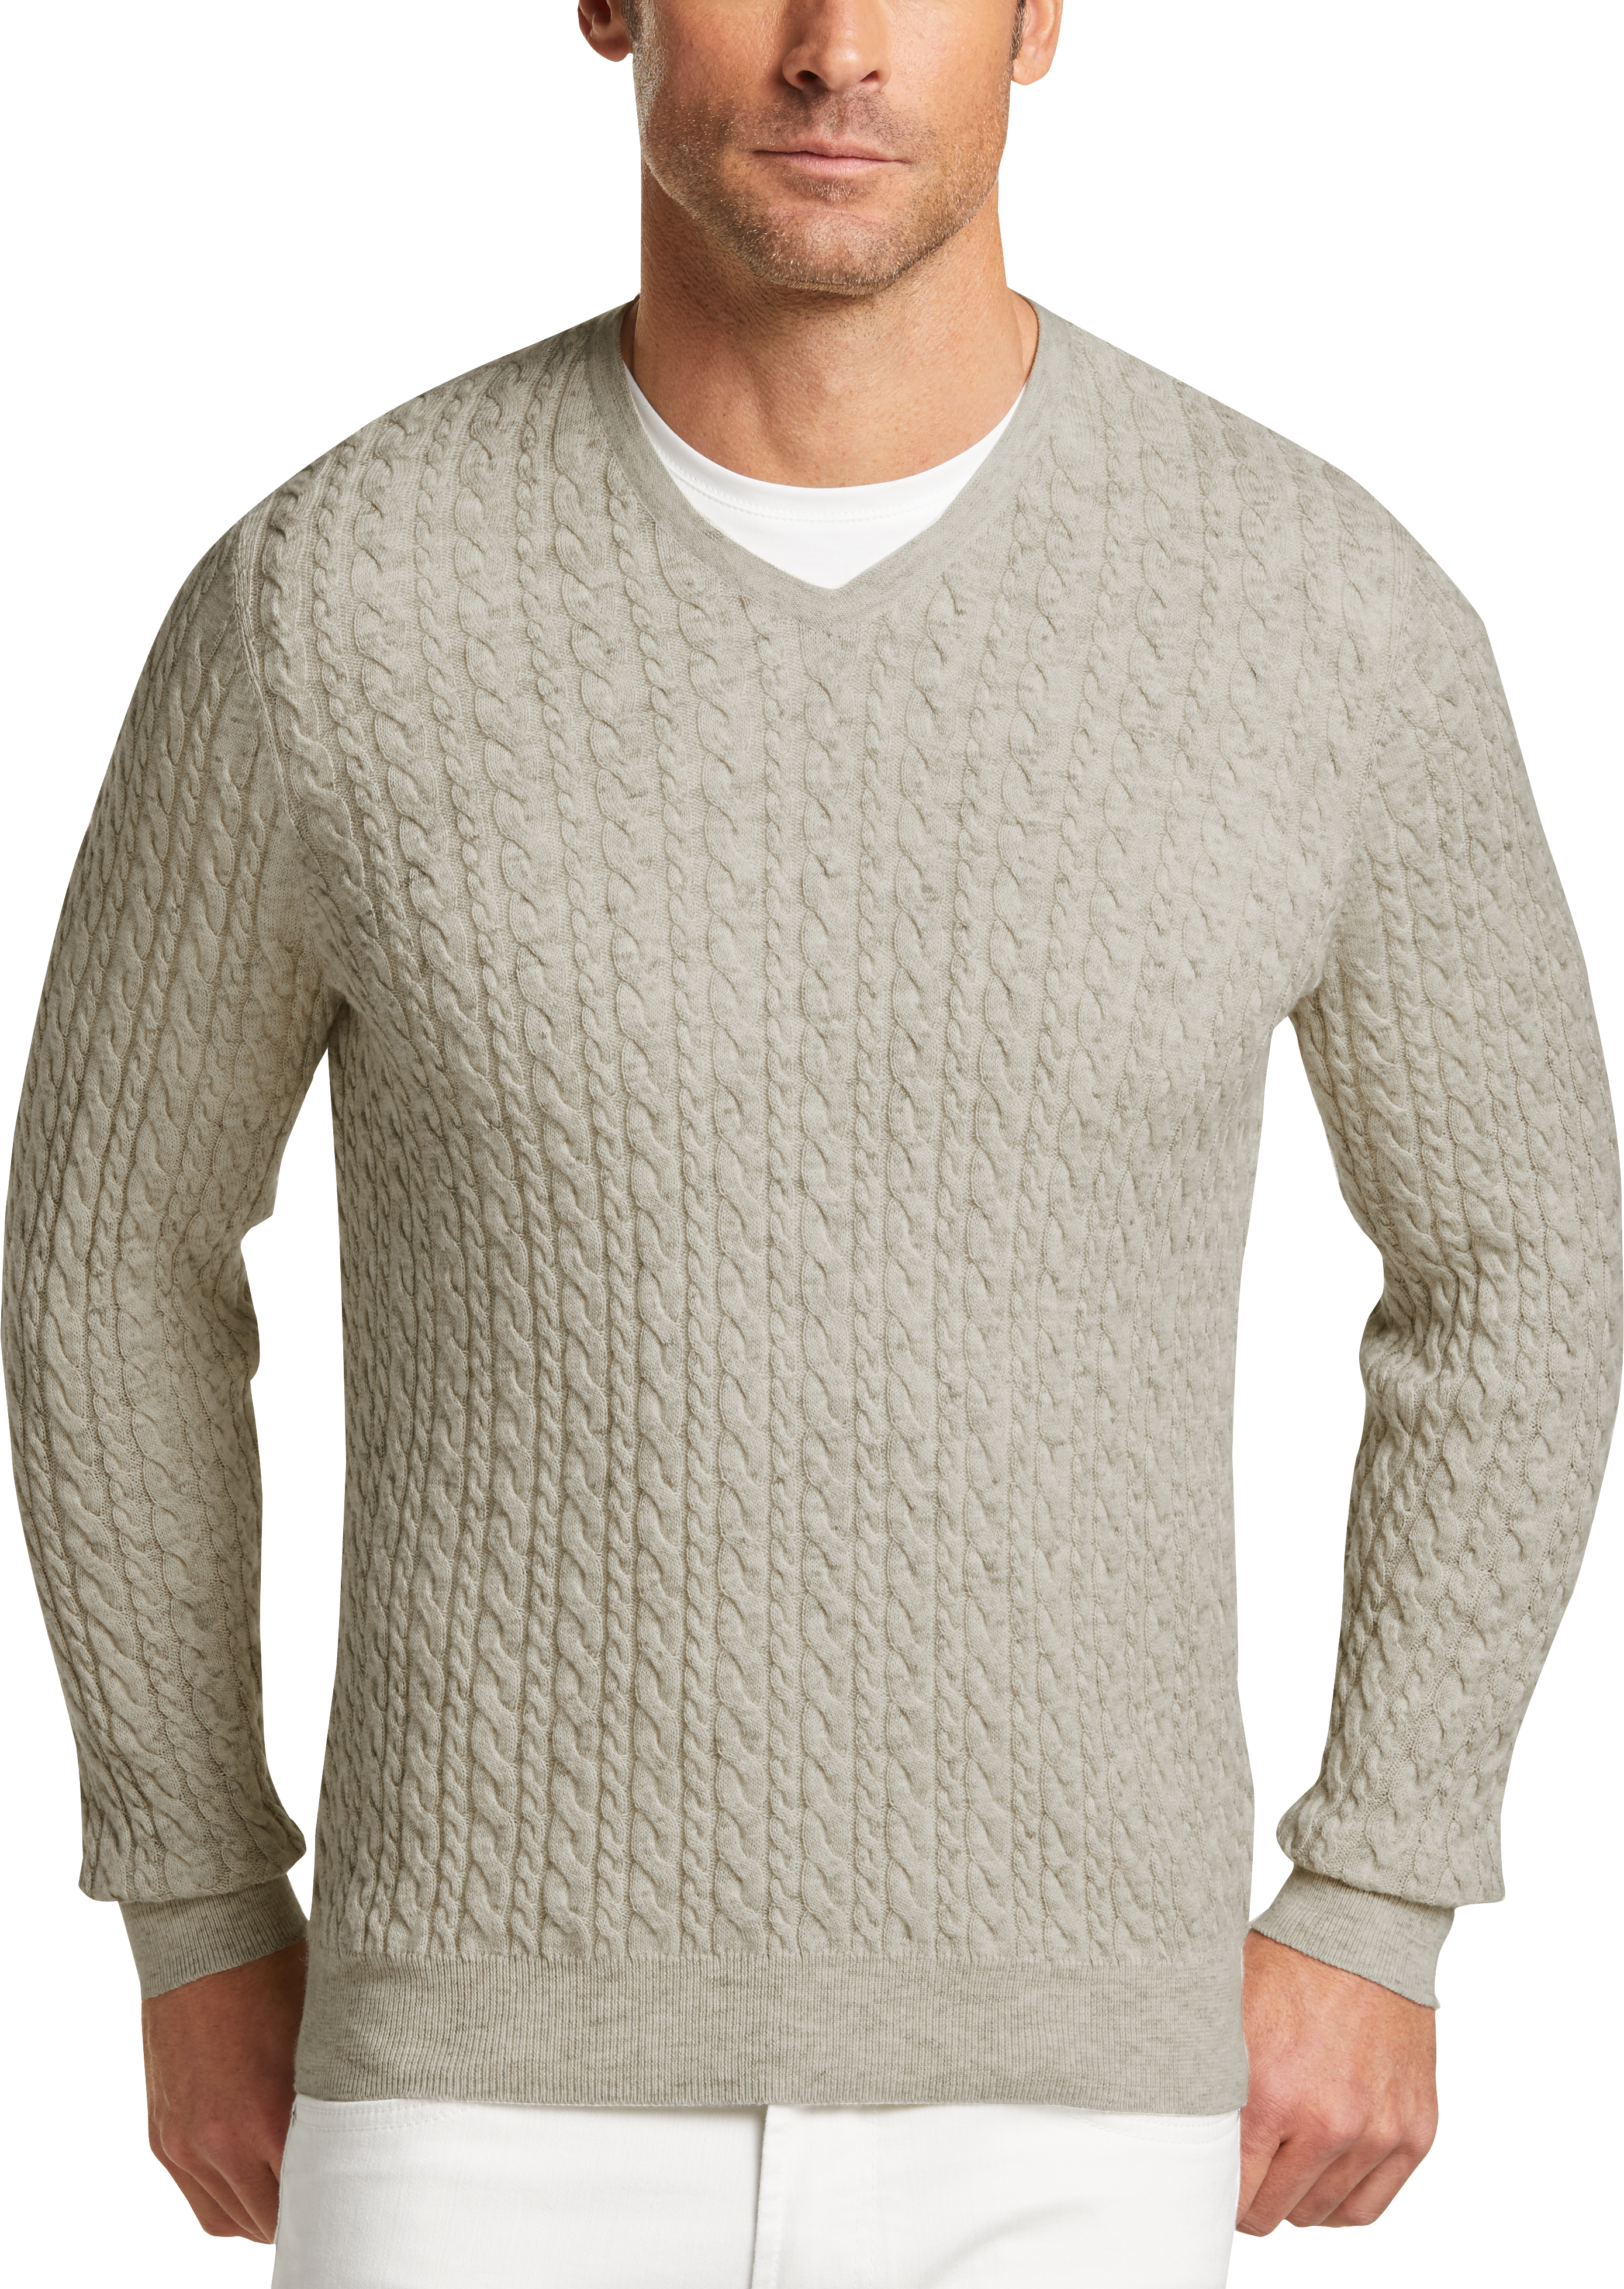 Joseph Abboud Mushroom Tan Sweater - Men's Sweaters | Men's Wearhouse